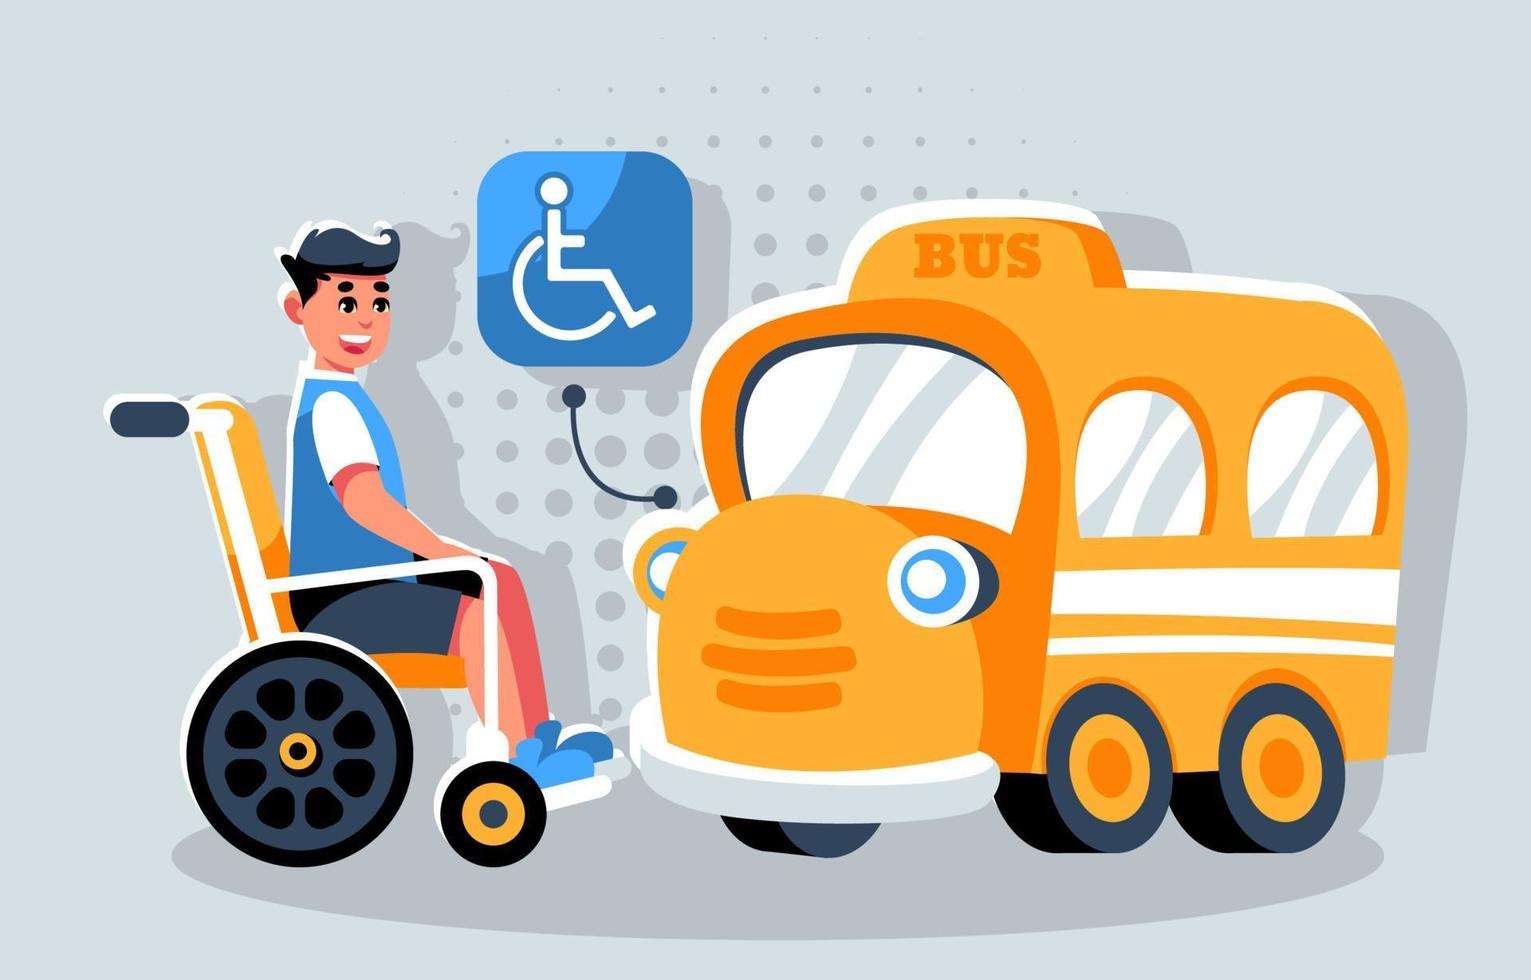 gli uomini con disabilità hanno fornito una rampa per sedie a rotelle per prendere l'autobus vettore